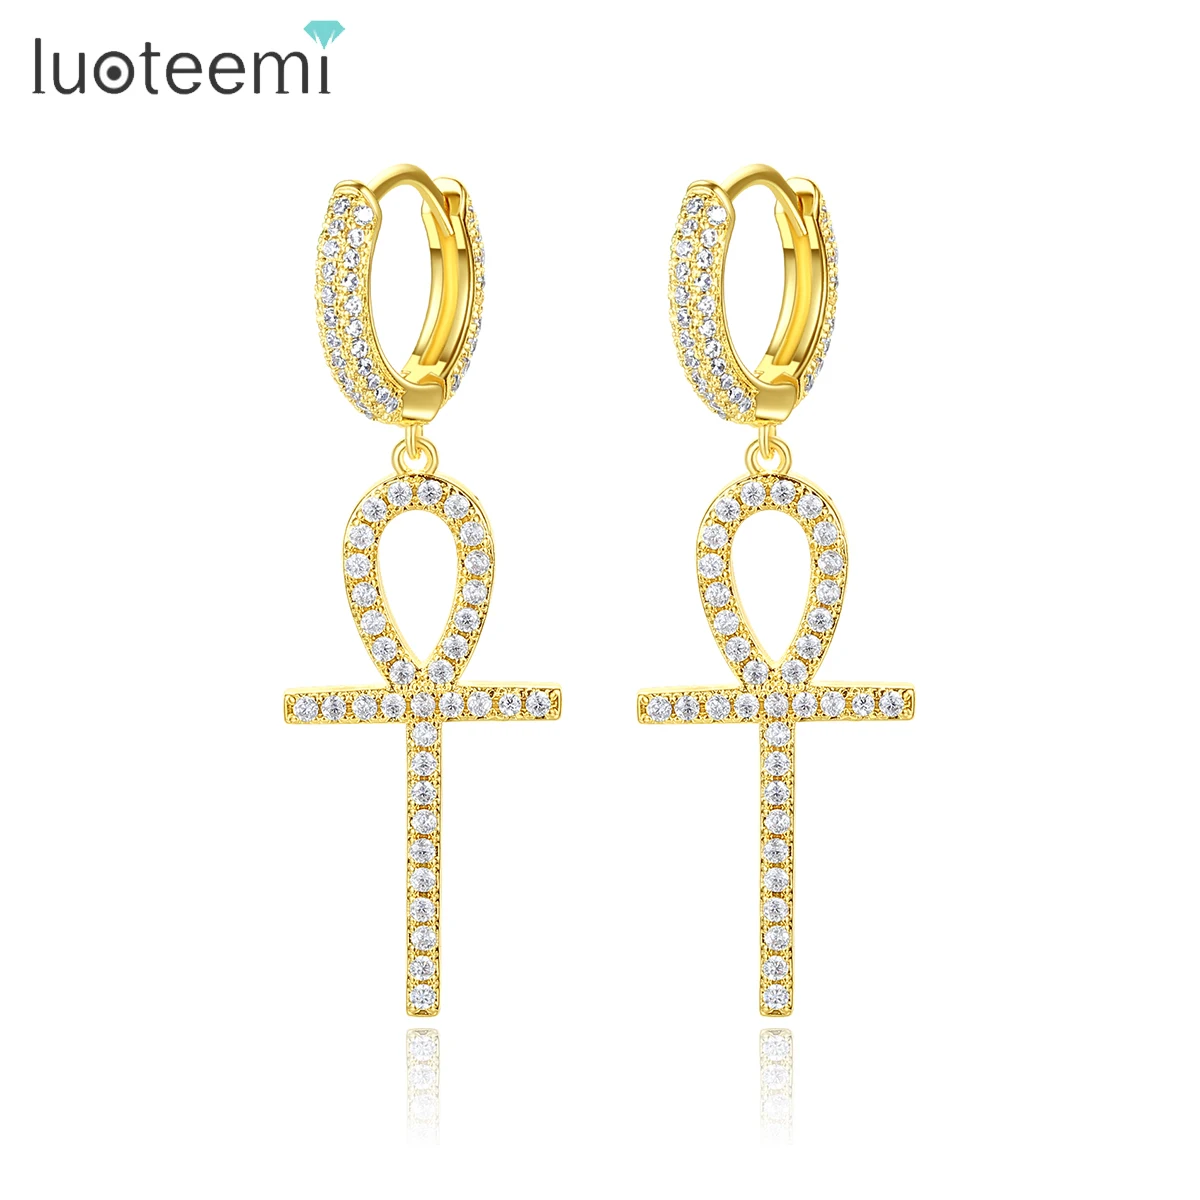 

LUOTEEMI Micro Inset AAA Cubic Zirconia CZ Fashion 18K Real Gold Clip on Earrings Ankh Cross Hoop Earrings Men Hips Hops Jewelry